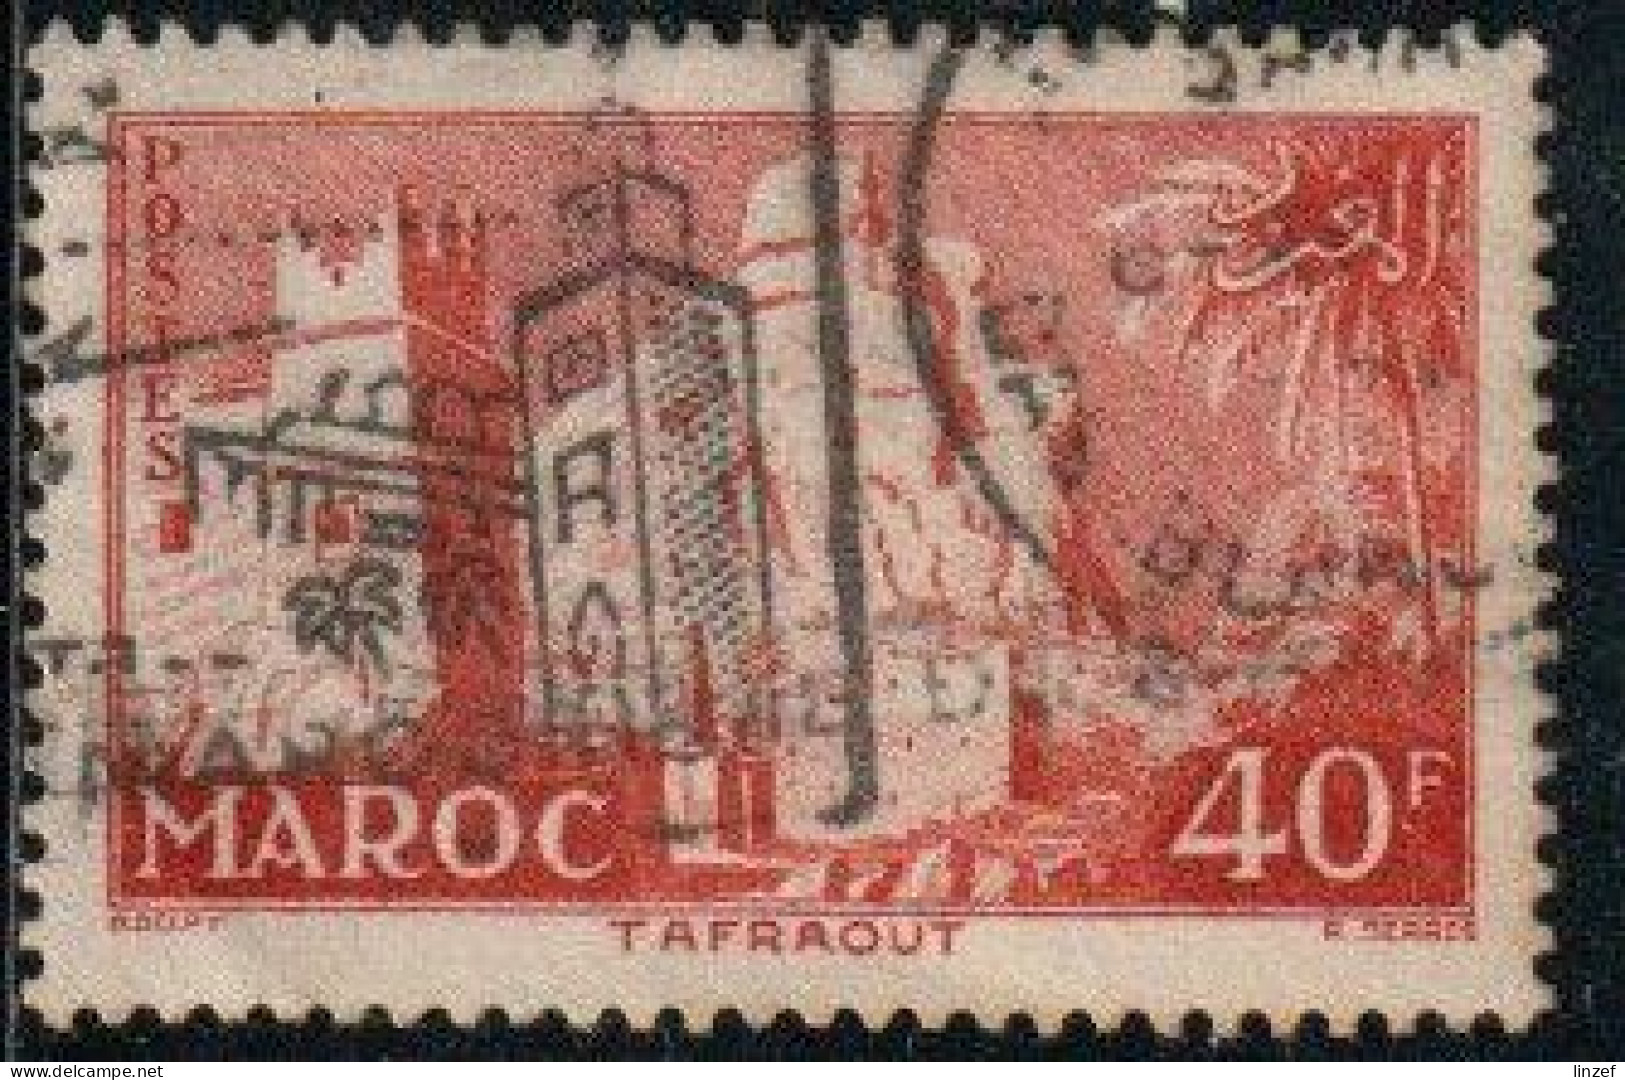 Maroc 1955 Yv. N°359 - 40f Rouge-brun Tafraout - Oblitéré - Gebruikt